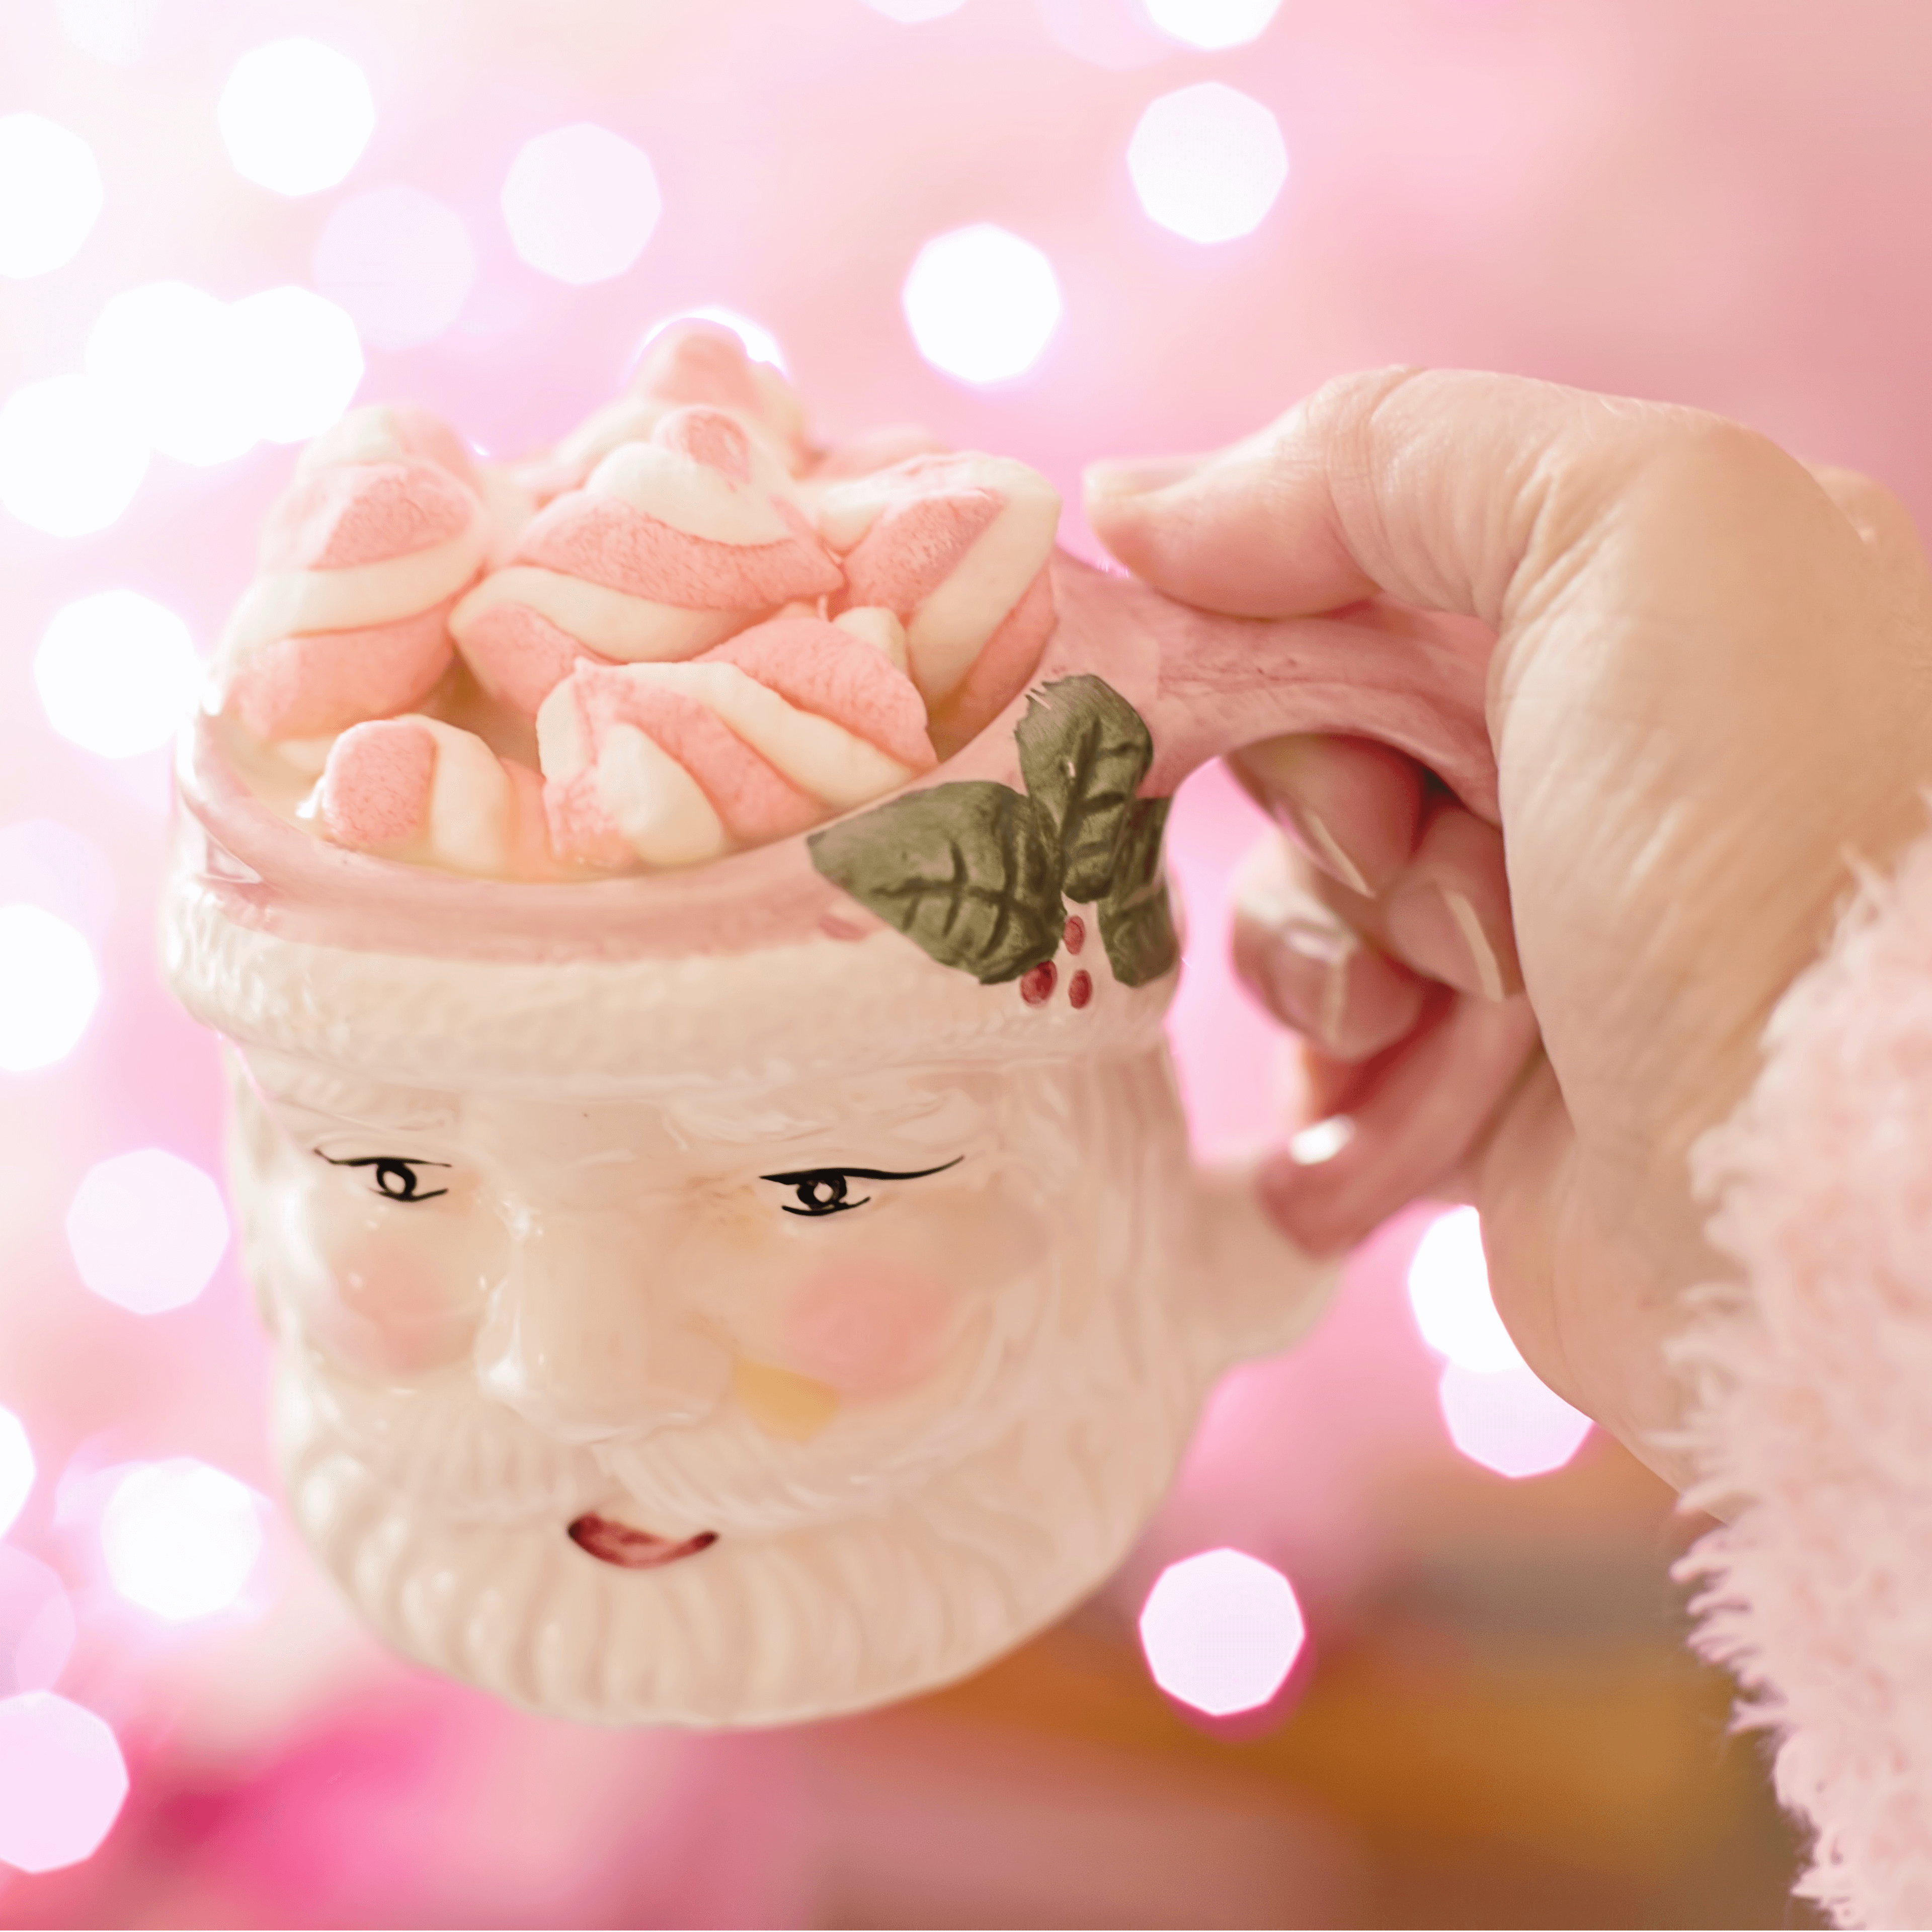 Handgemachte Keramik zu Weihnachten - Marshmallow